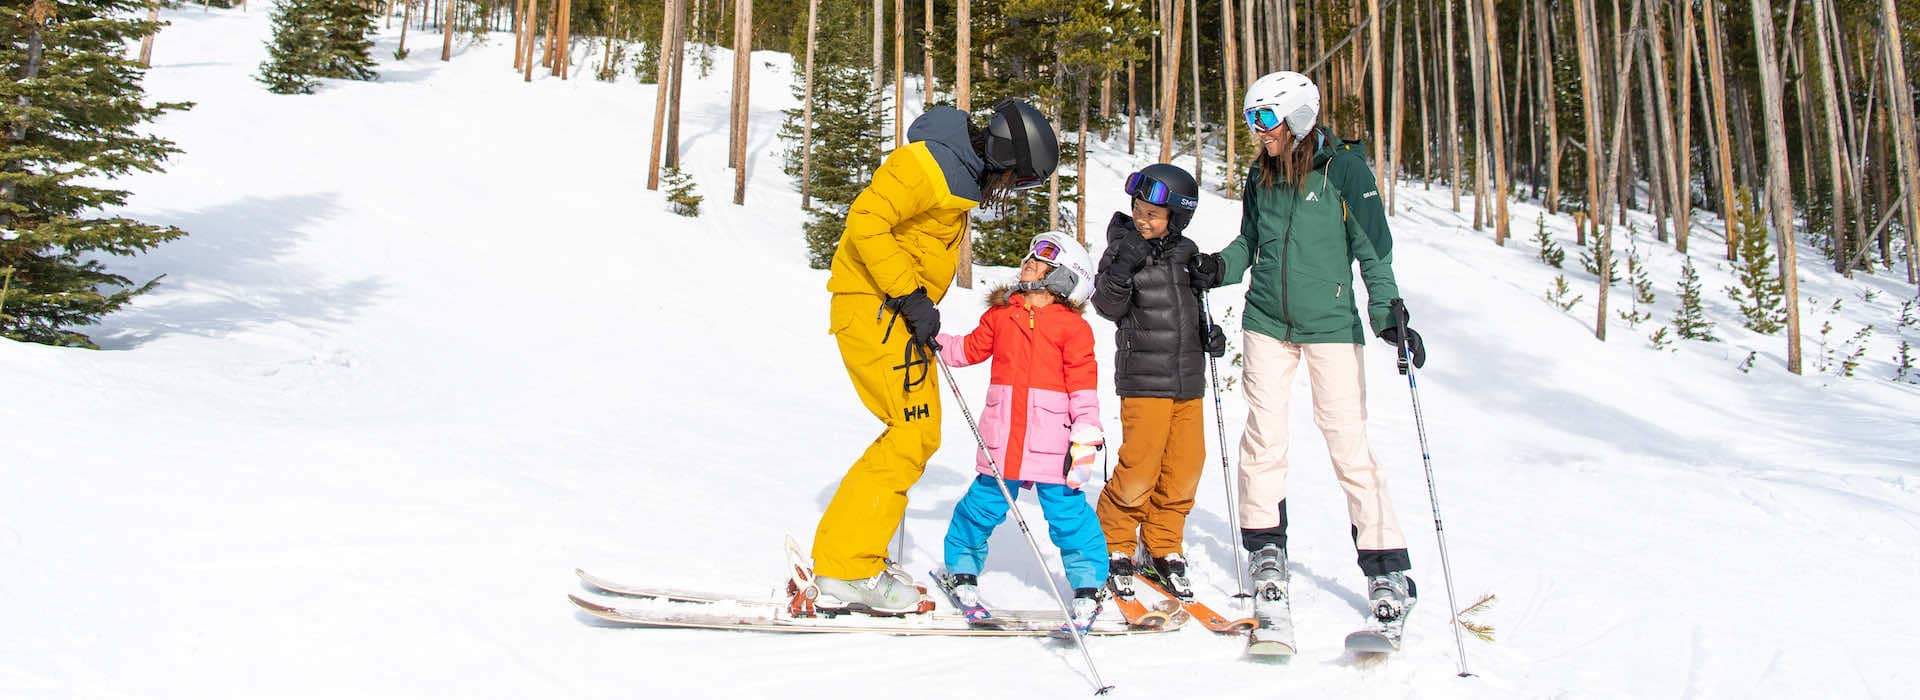 Family in ski gear